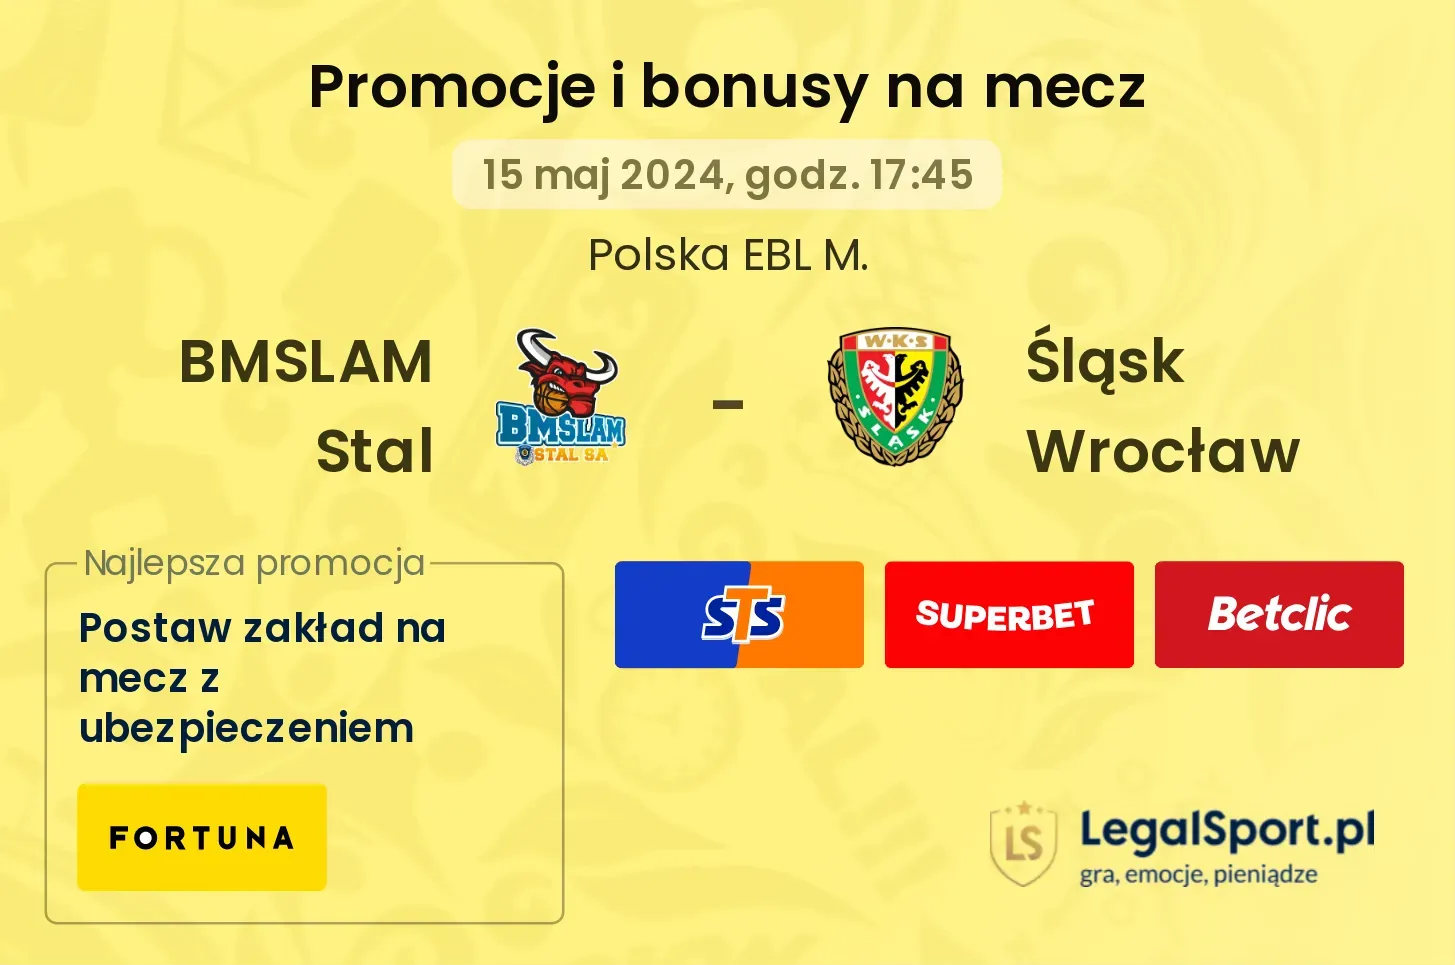 BMSLAM Stal - Śląsk Wrocław bonusy i promocje (15.05, 17:45)